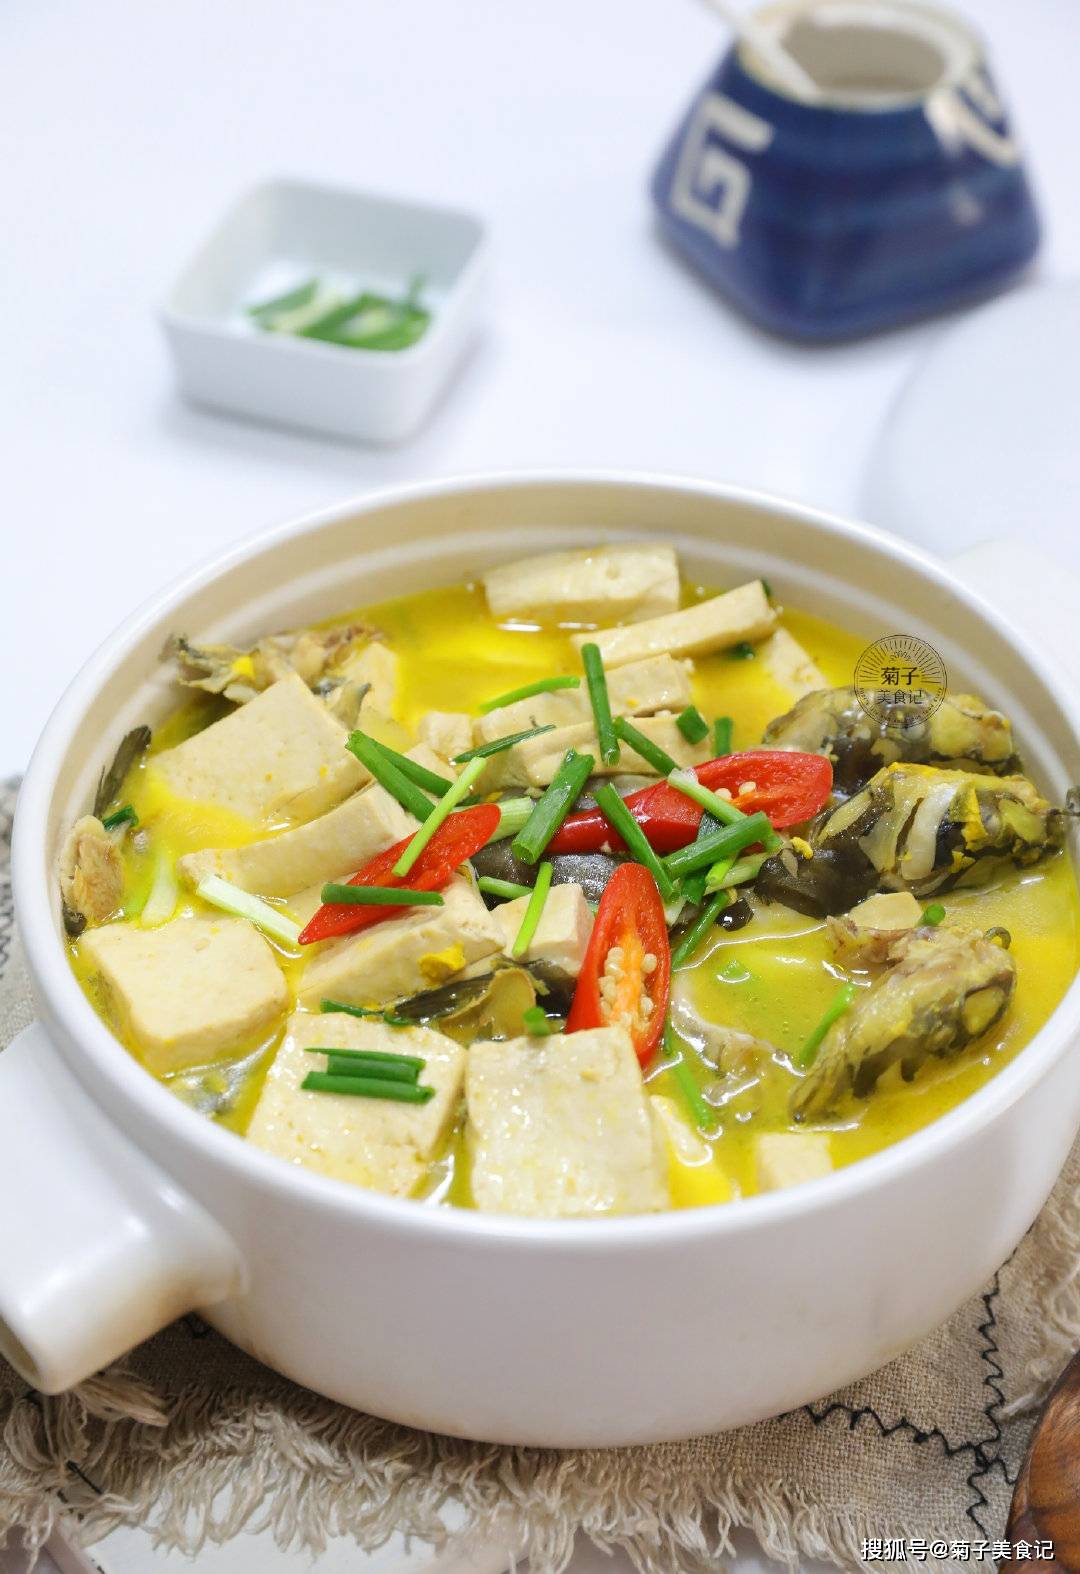 原创黄骨鱼焖豆腐如何做得好吃?注意这3点,肉嫩汤鲜,暖身又暖胃